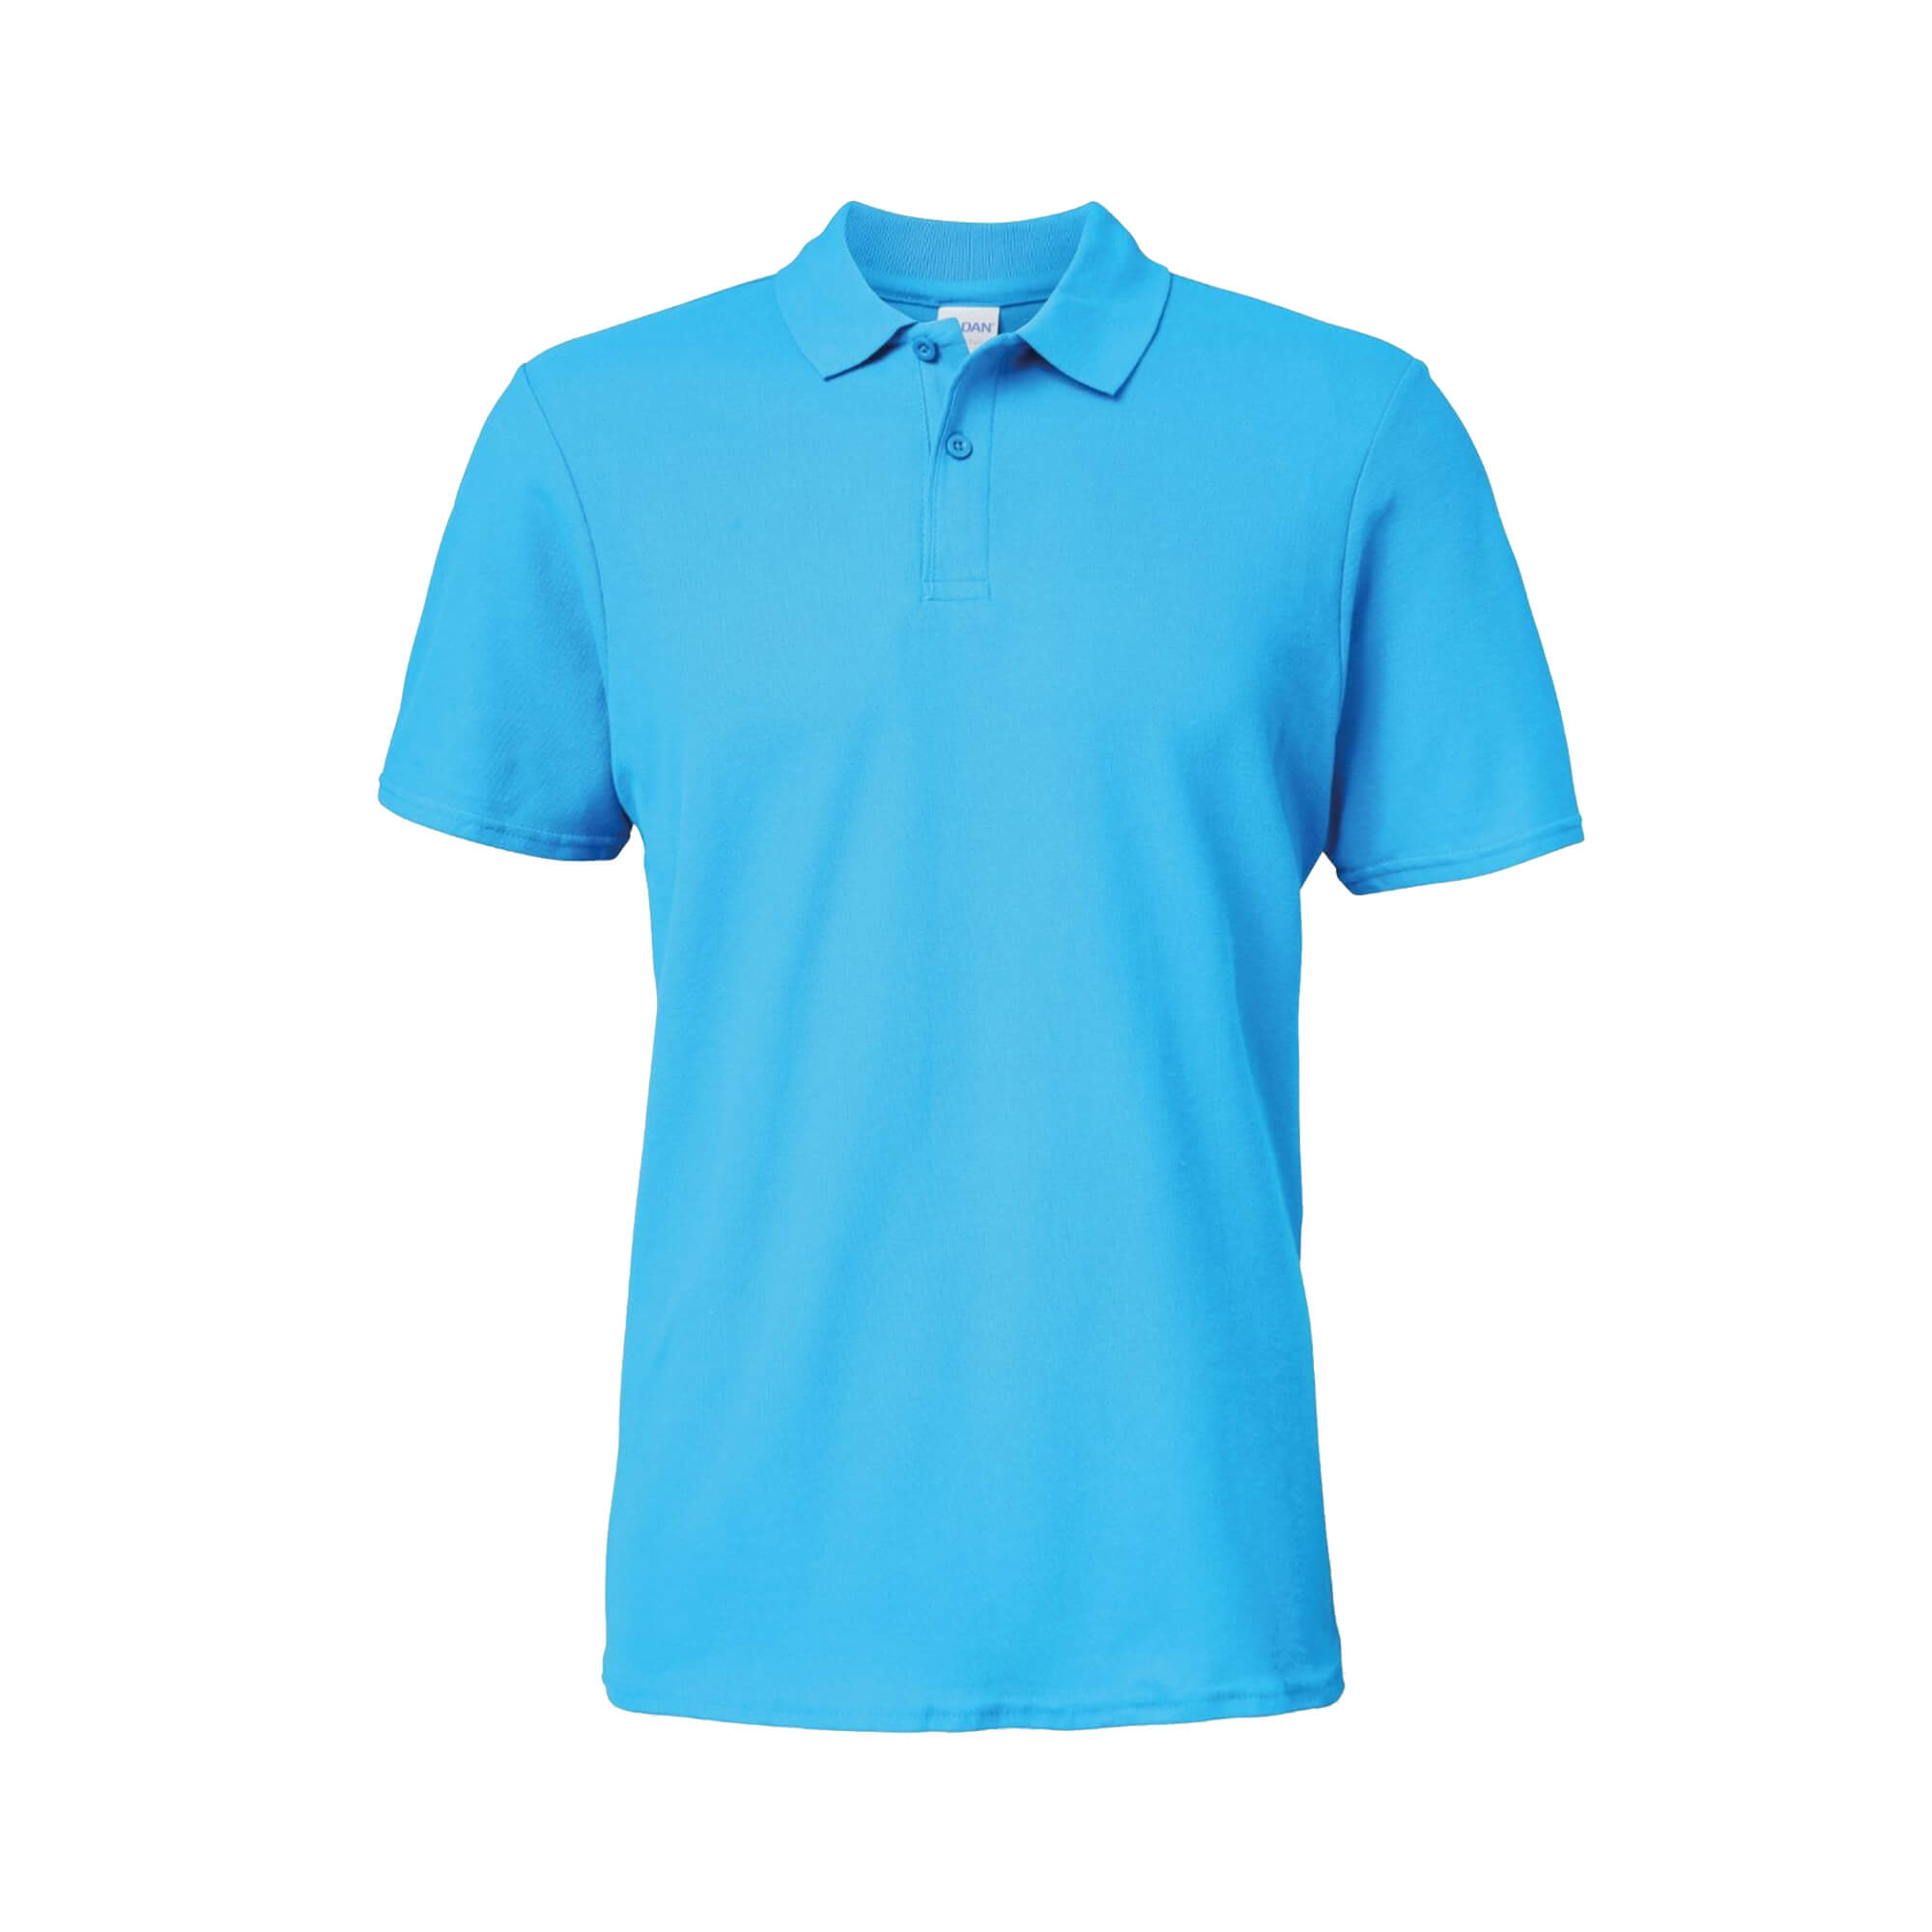 Gildan Softstyle Pique Men's Polo Shirt